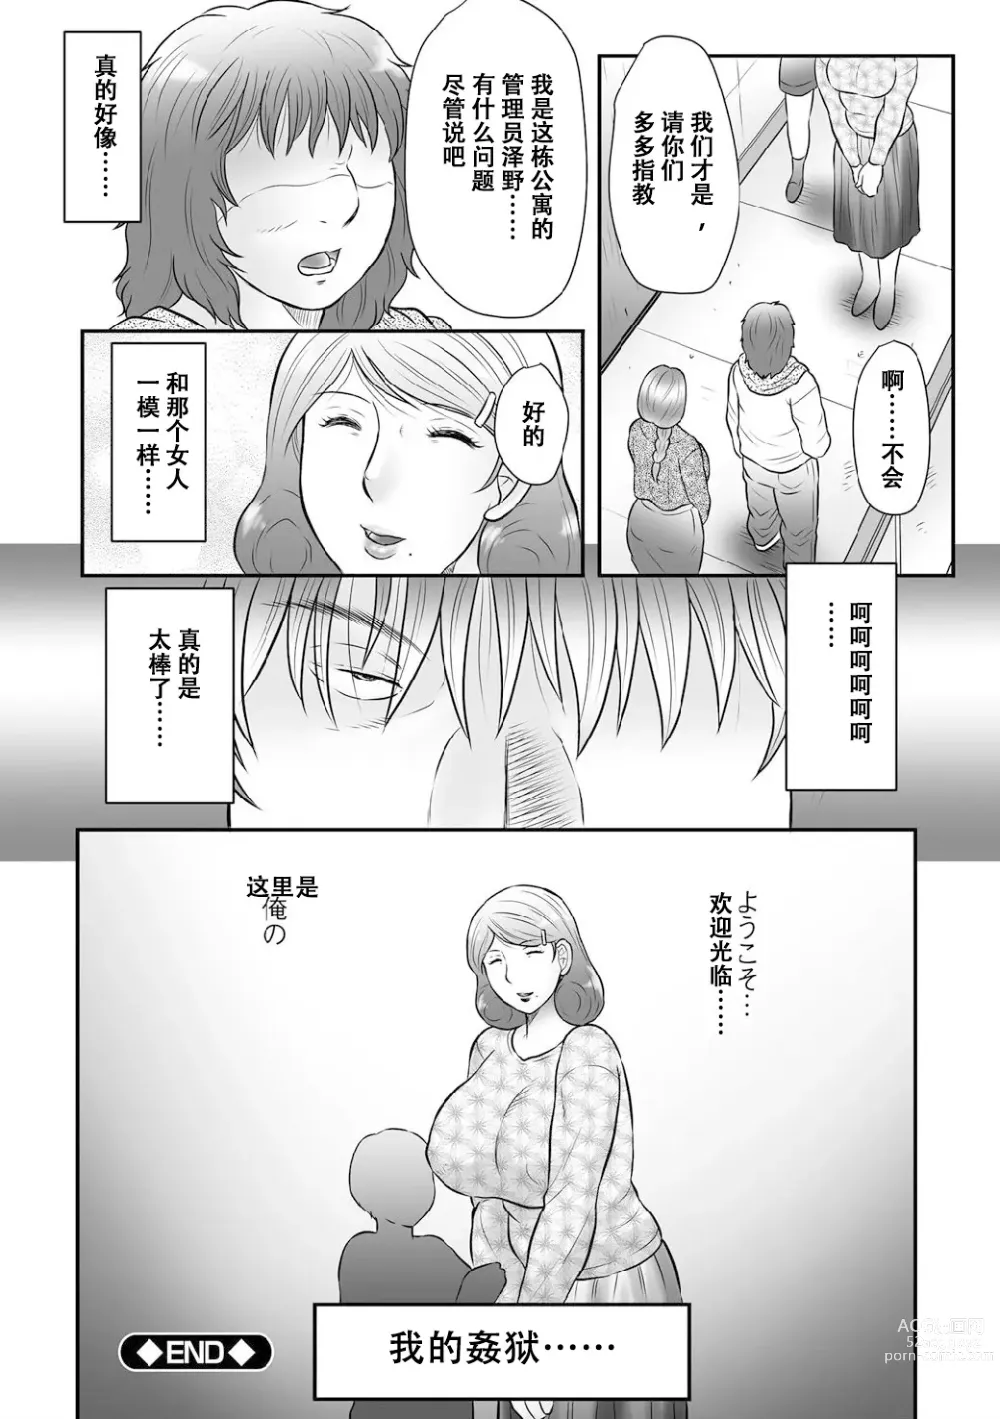 Page 9 of manga Haha Kangoku INFINITY